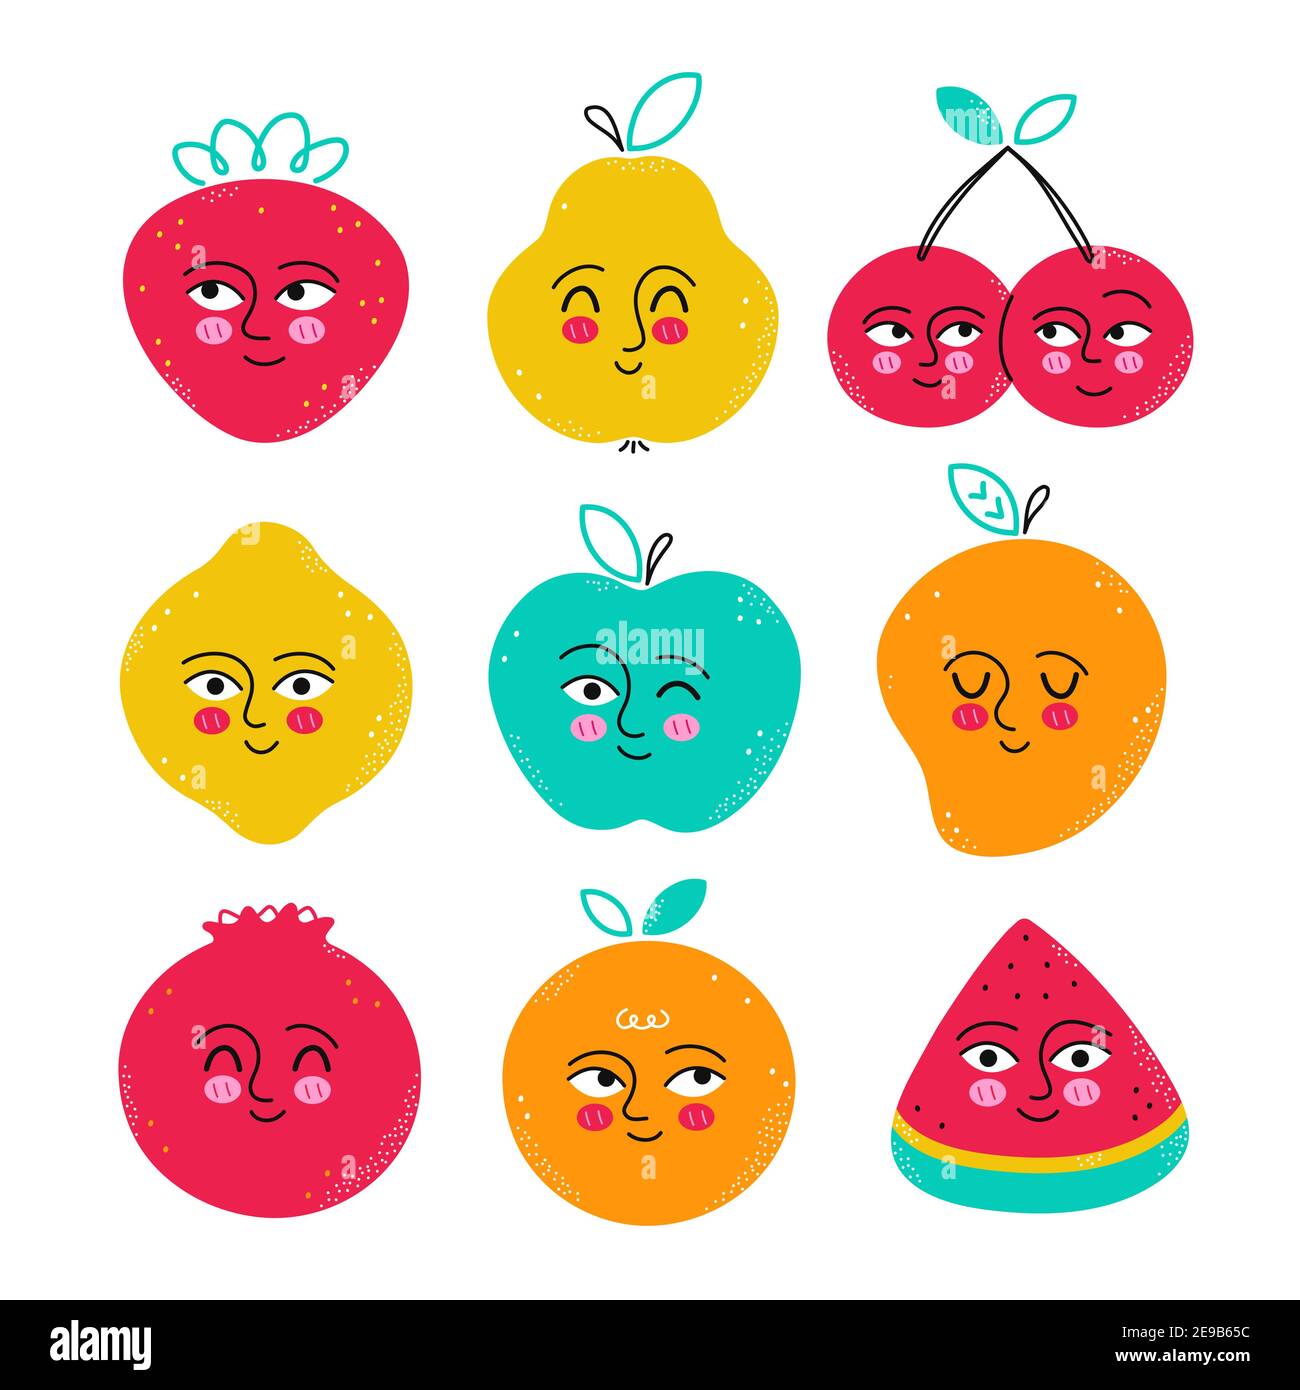 Ensemble de personnages de fruits amusants et mignons. Icône d'illustration dessinée à la main représentant un dessin animé à plat vectoriel kawaii. Isolé sur fond blanc. Fraise,grenade,poire,cerise,citron,pastèque,orange,mangue,pomme Illustration de Vecteur